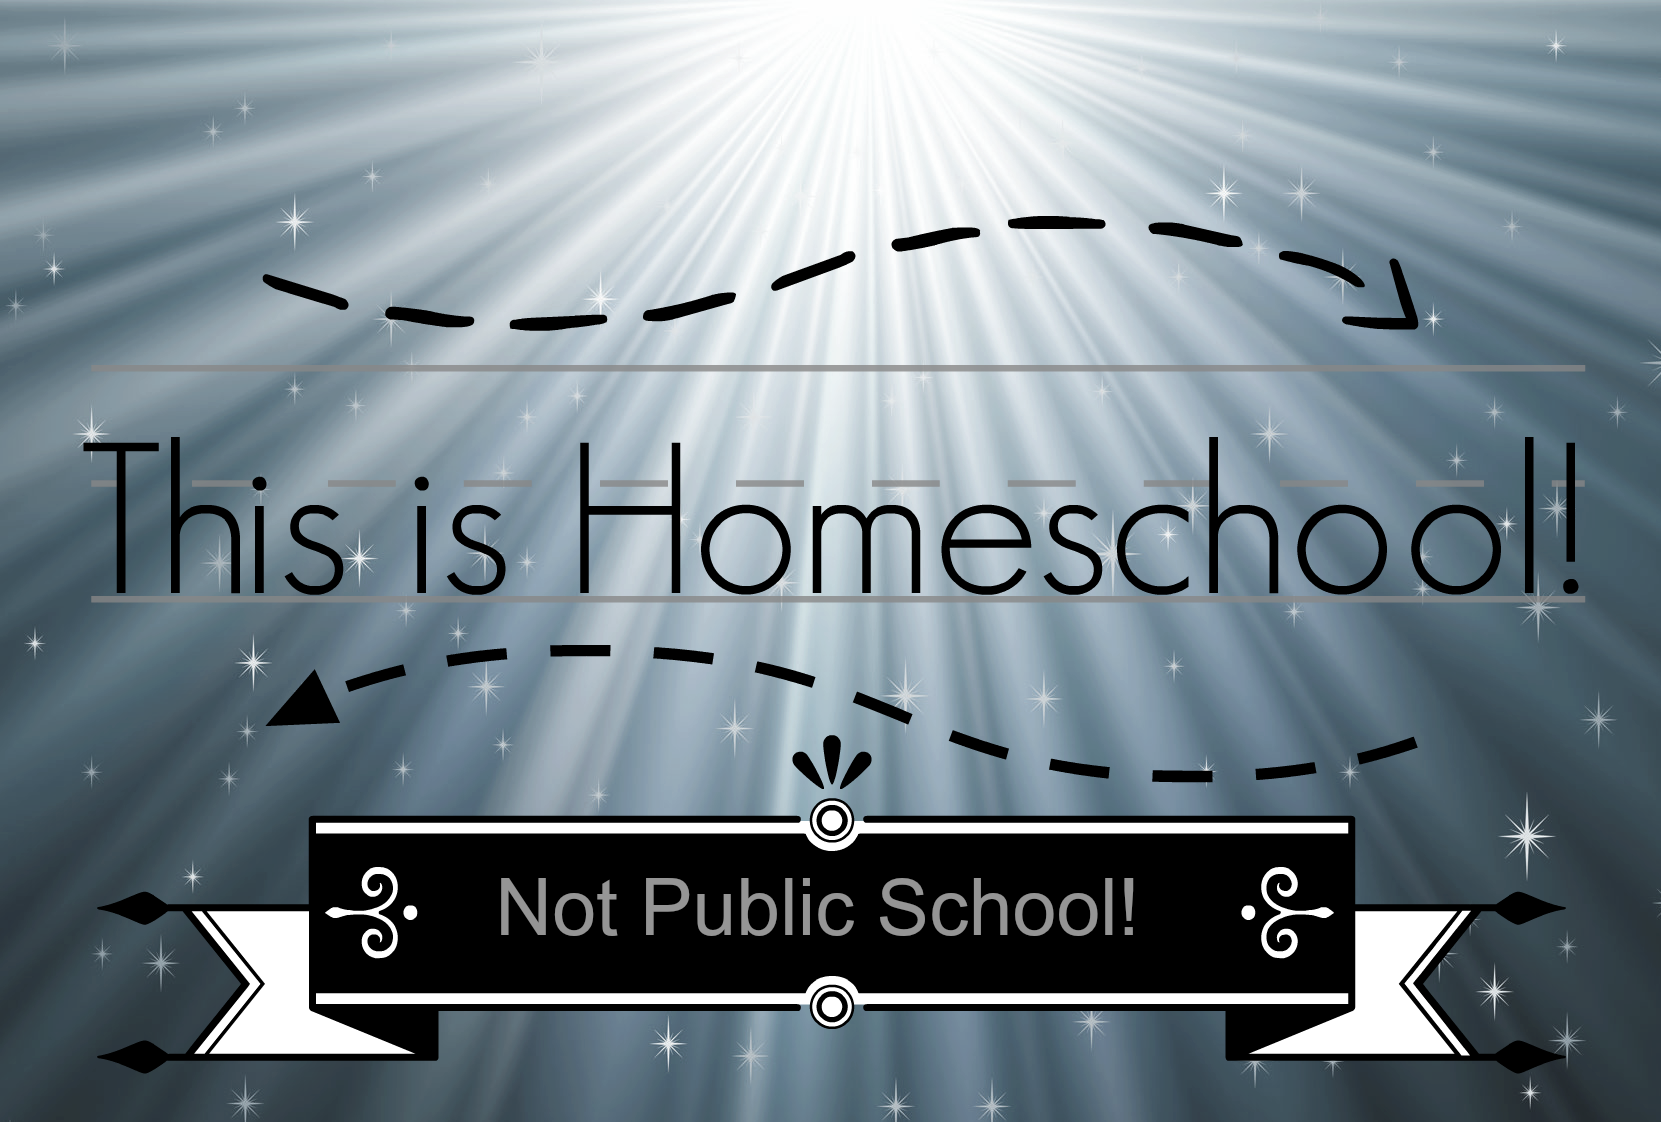 This is Homeschool not Public School!